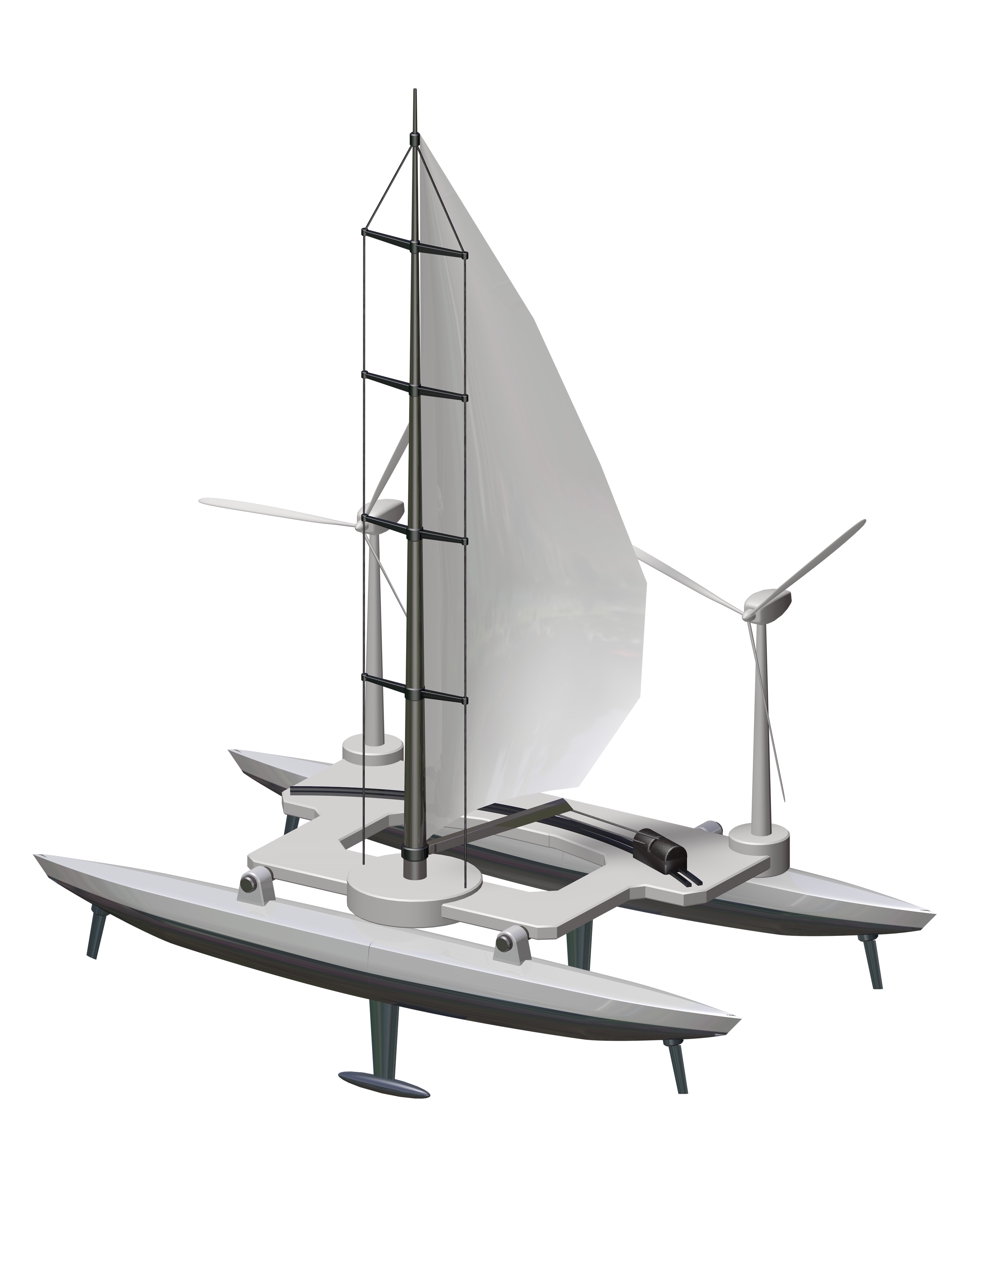 近未来のヨット型のロボット　セイルを立てて海原に浮かび、船上には風車を搭載し発電できる